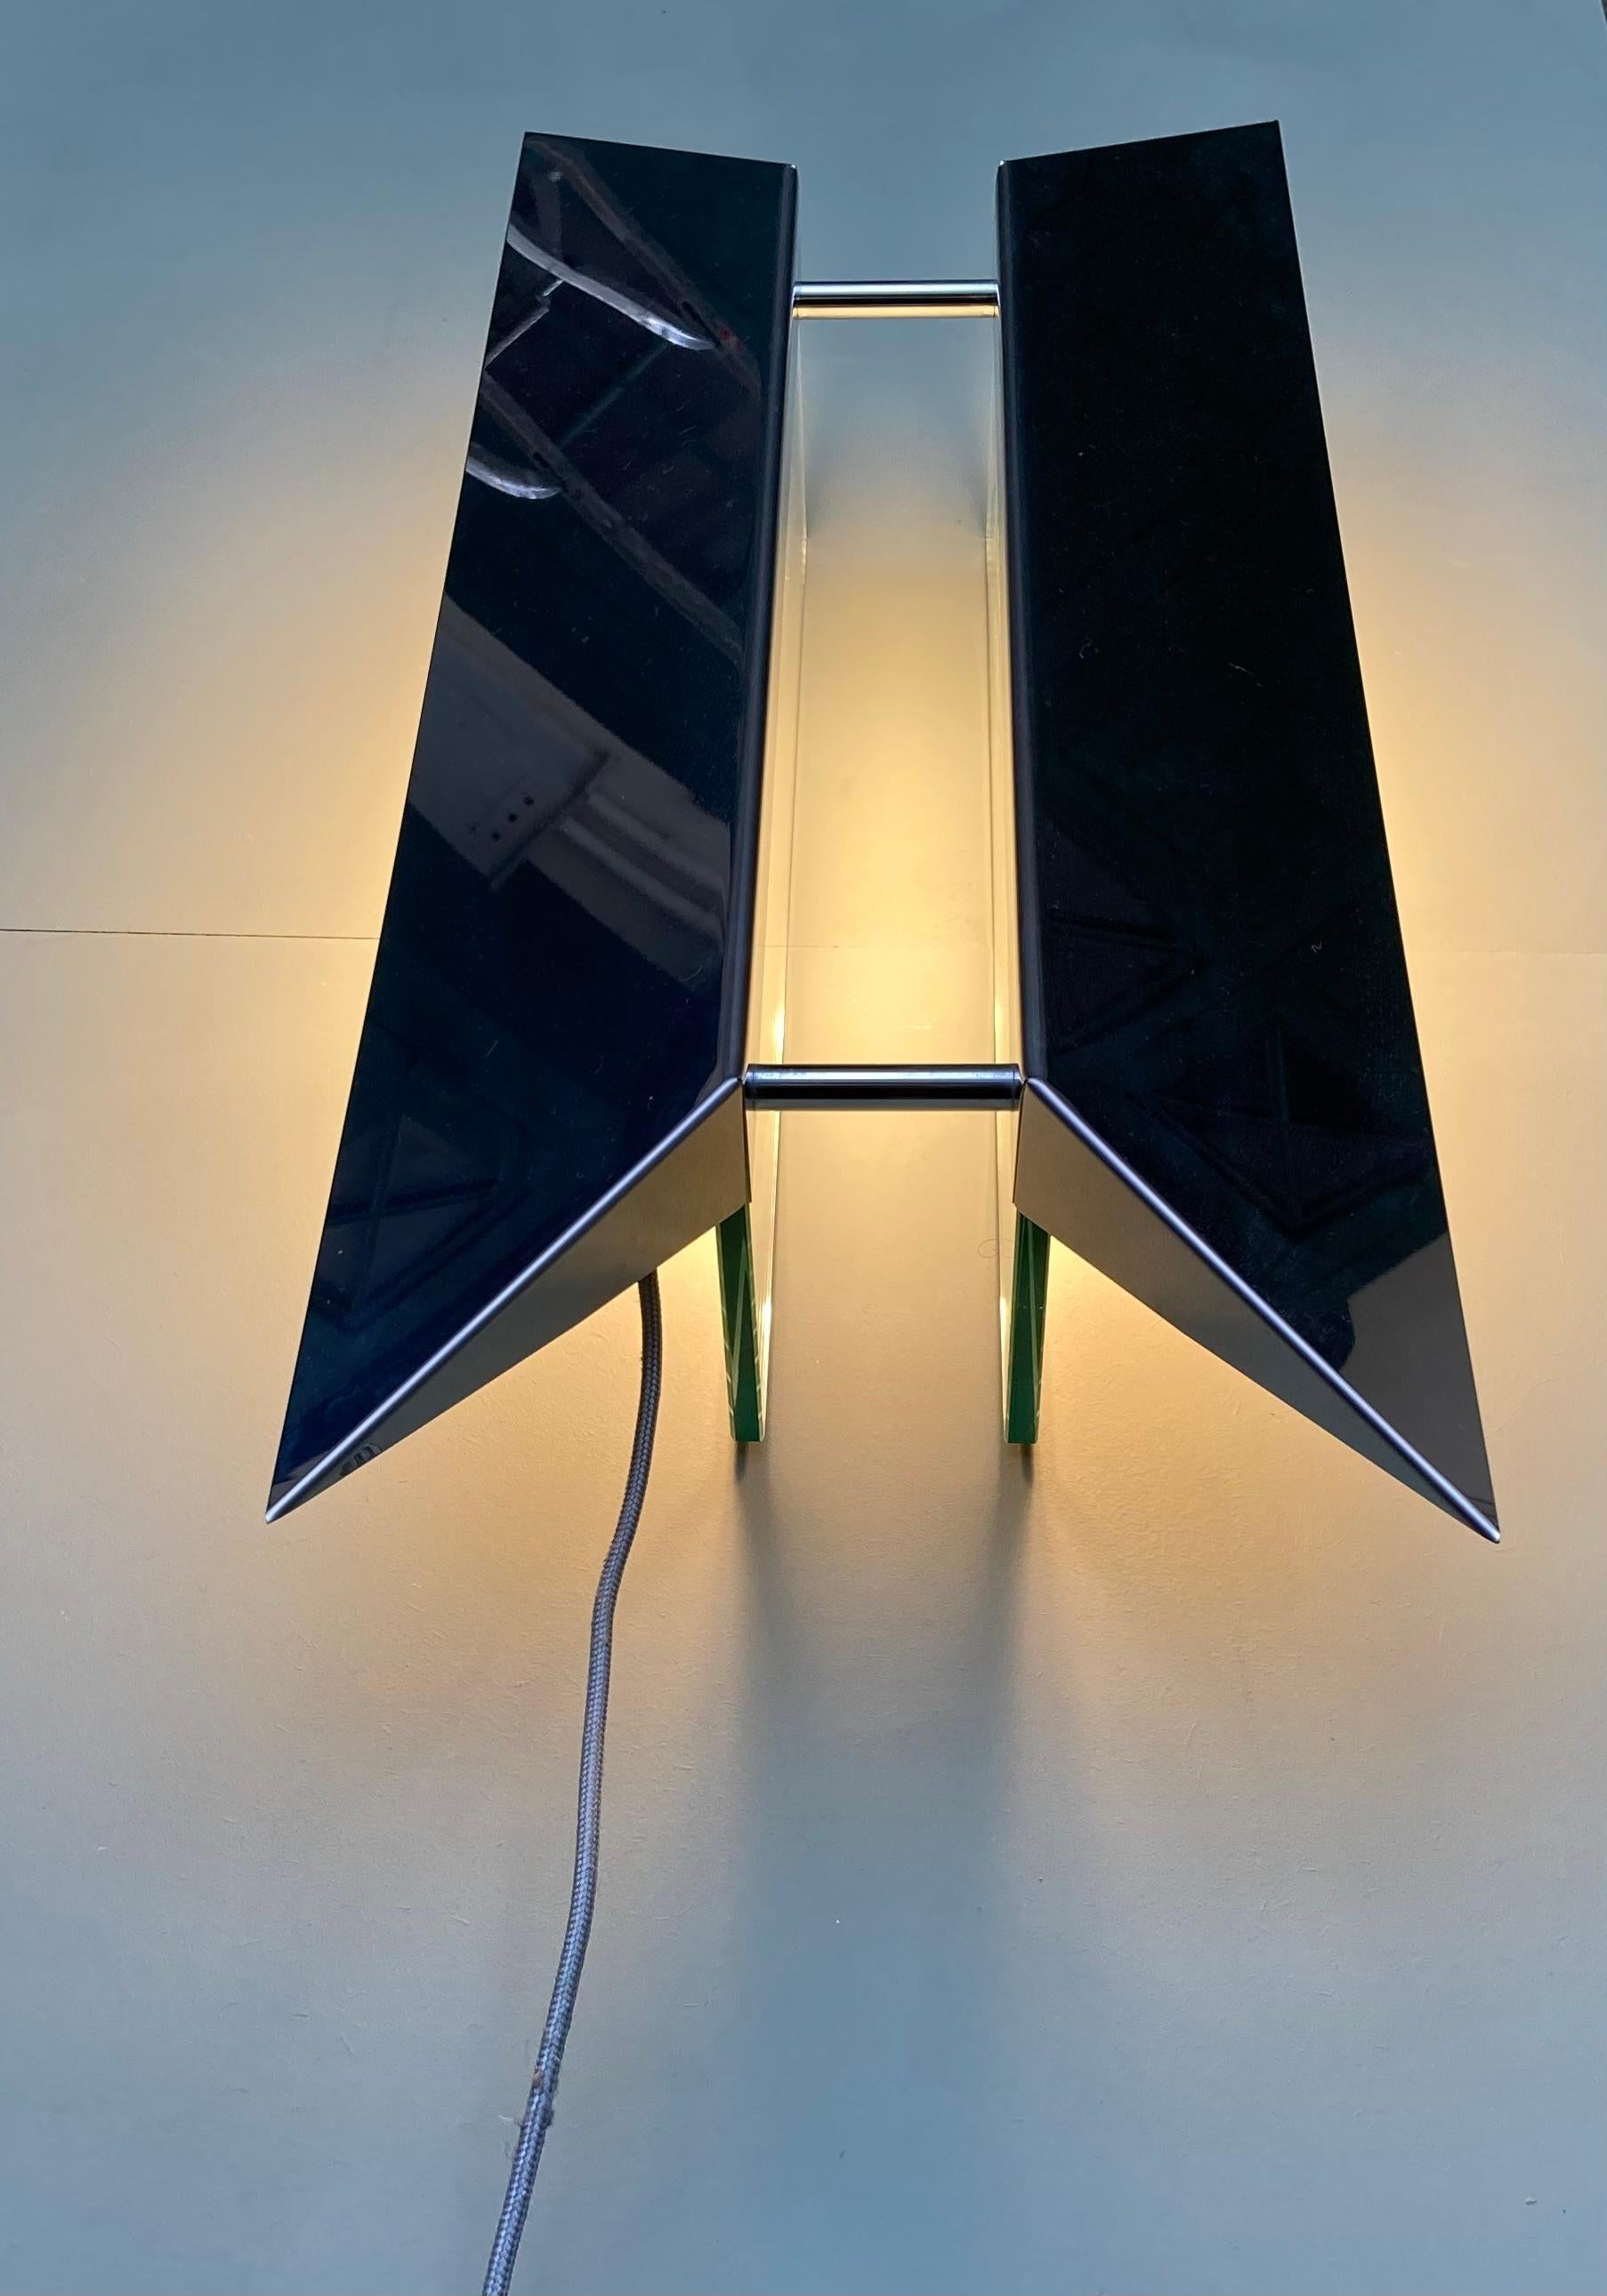 Lampe modèle Pietra de Gae Aulenti & Piero Castiglioni pour Fontana Arte, création 1988.
Cette grande lampe de table ou de bureau repose sur 2 épaisses lames de verre et est recouverte d'une lame de métal chromé.
La qualité des matériaux et sa forme